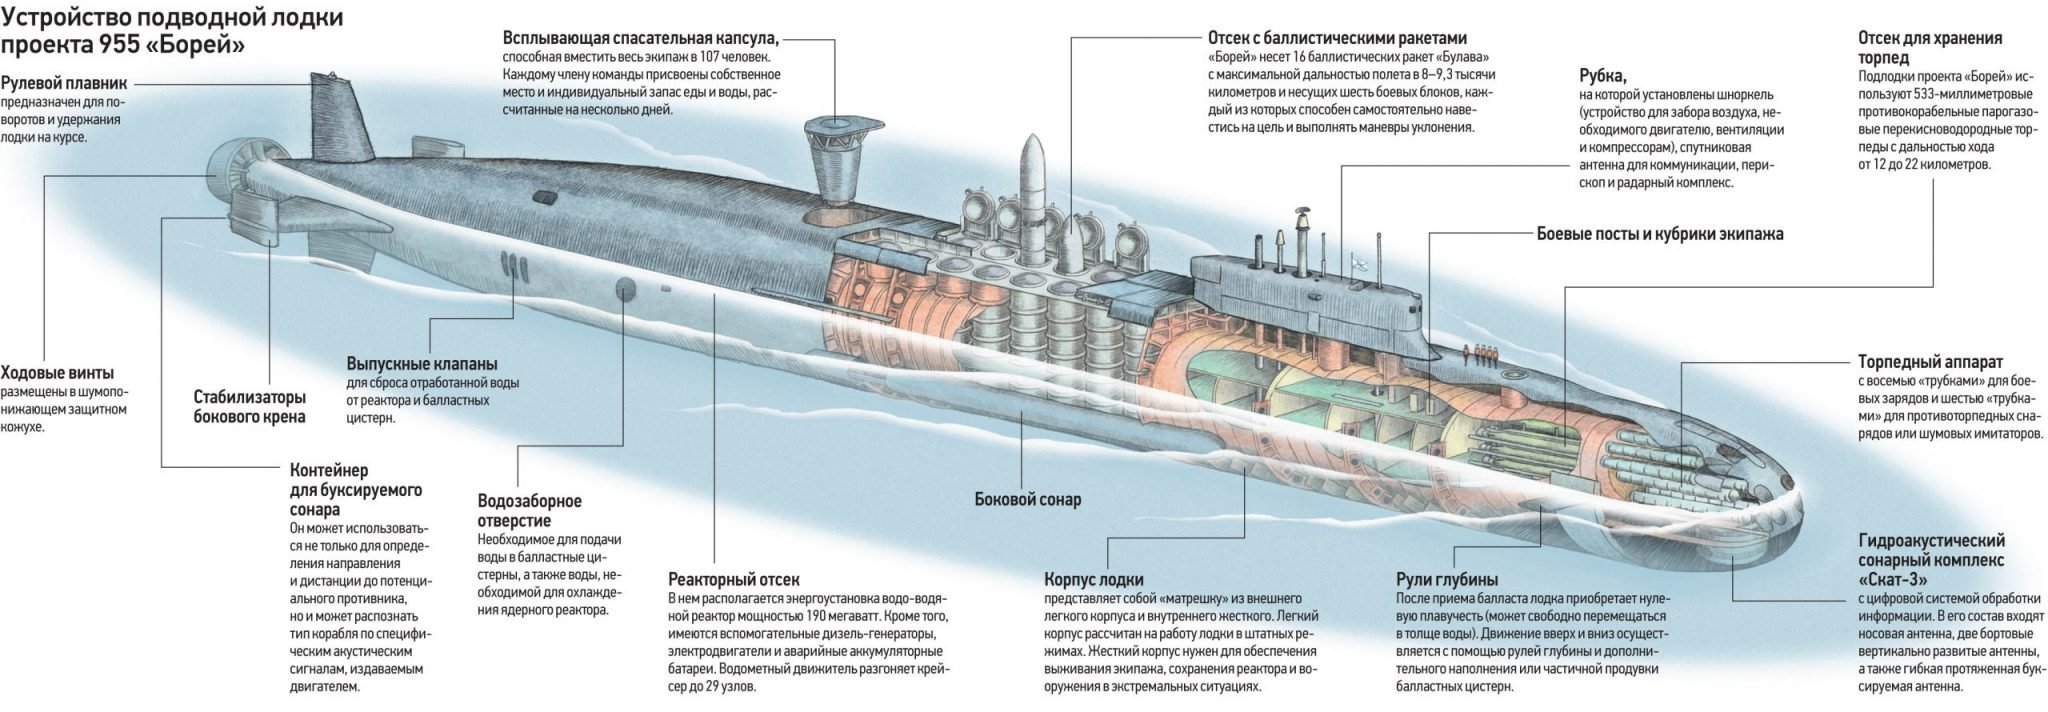 Пл характеристики. Подводная лодка 955 Борей чертёж. Подводная лодка проекта 955 Борей. Подводная лодка 4 поколения Борей. Подлодка Борей проекта 955 чертеж.